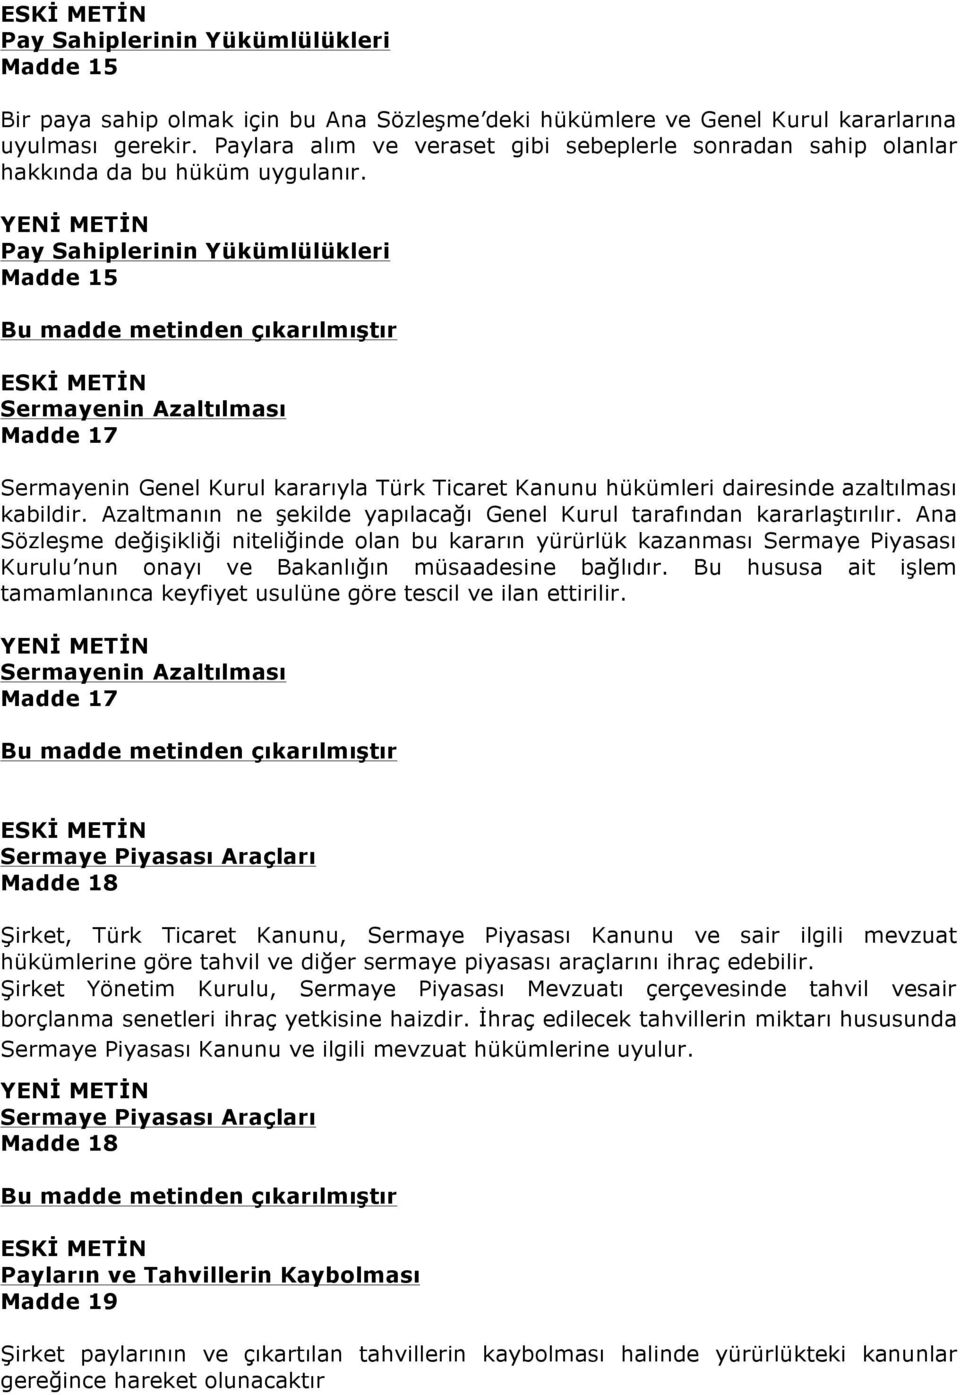 Pay Sahiplerinin Yükümlülükleri Madde 15 Sermayenin Azaltılması Madde 17 Sermayenin Genel Kurul kararıyla Türk Ticaret Kanunu hükümleri dairesinde azaltılması kabildir.